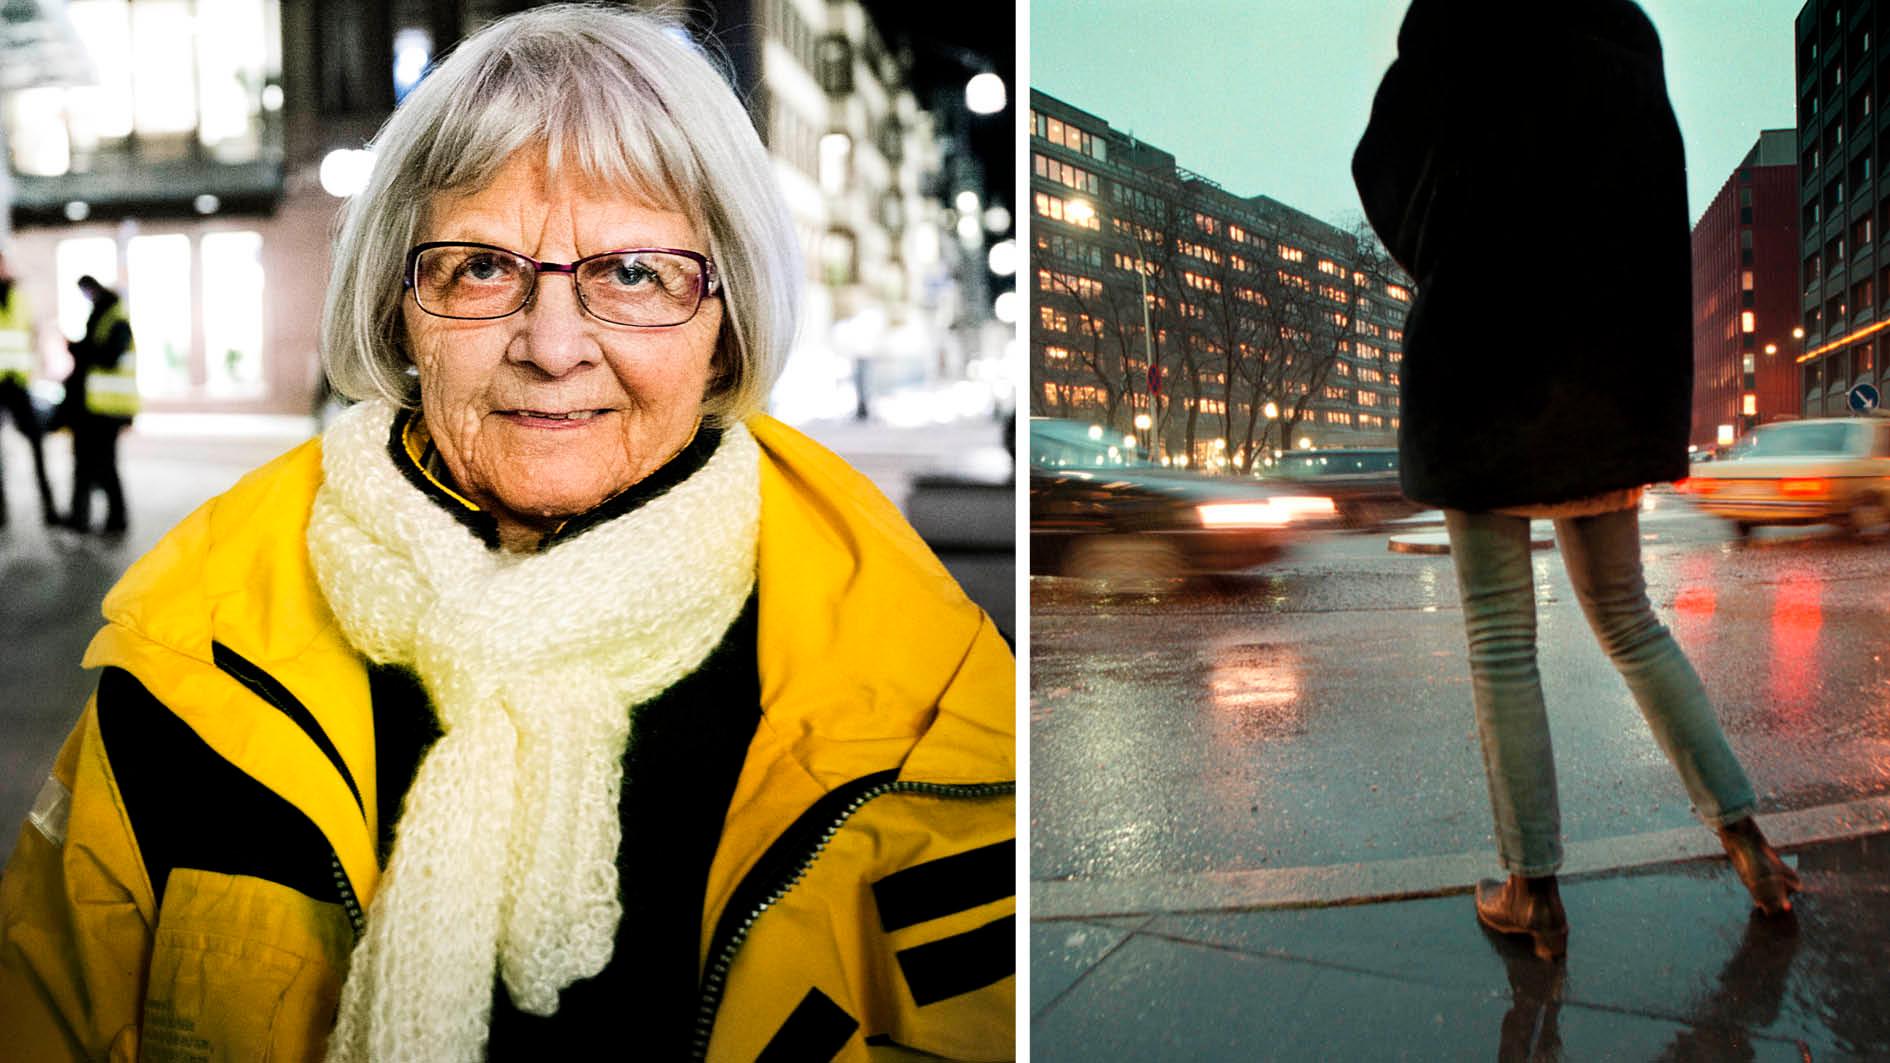 De prostituerade på gatan, som de flesta är i 20-årsåldern, kallar Elise Lindqvist för ”Morsan”.